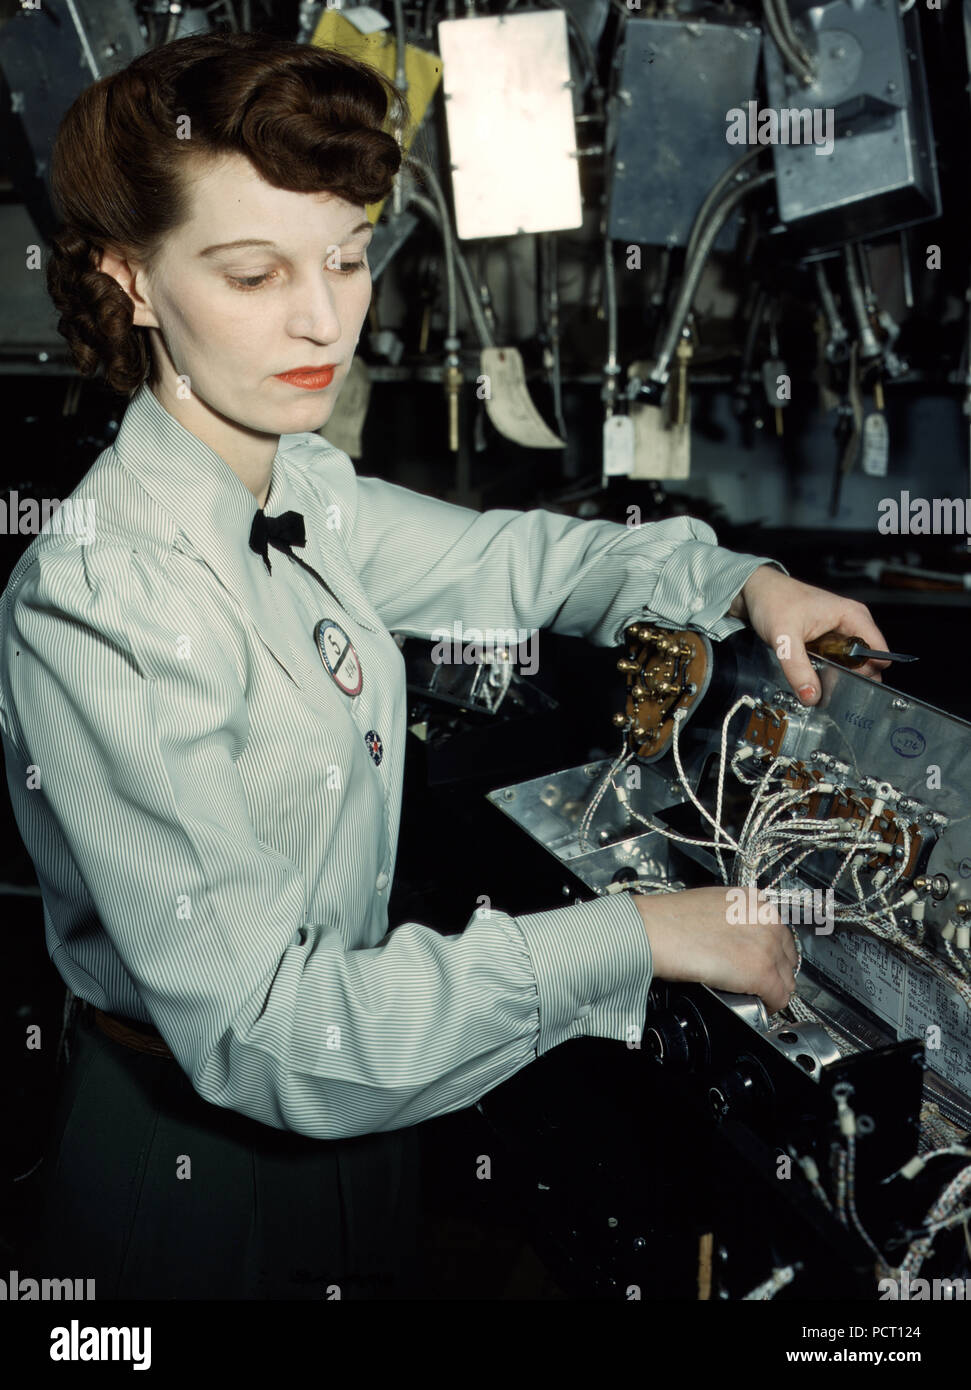 Tecnico elettronico, Goodyear Aircraft Corp., Akron, Ohio - Dicembre 1941 Foto Stock